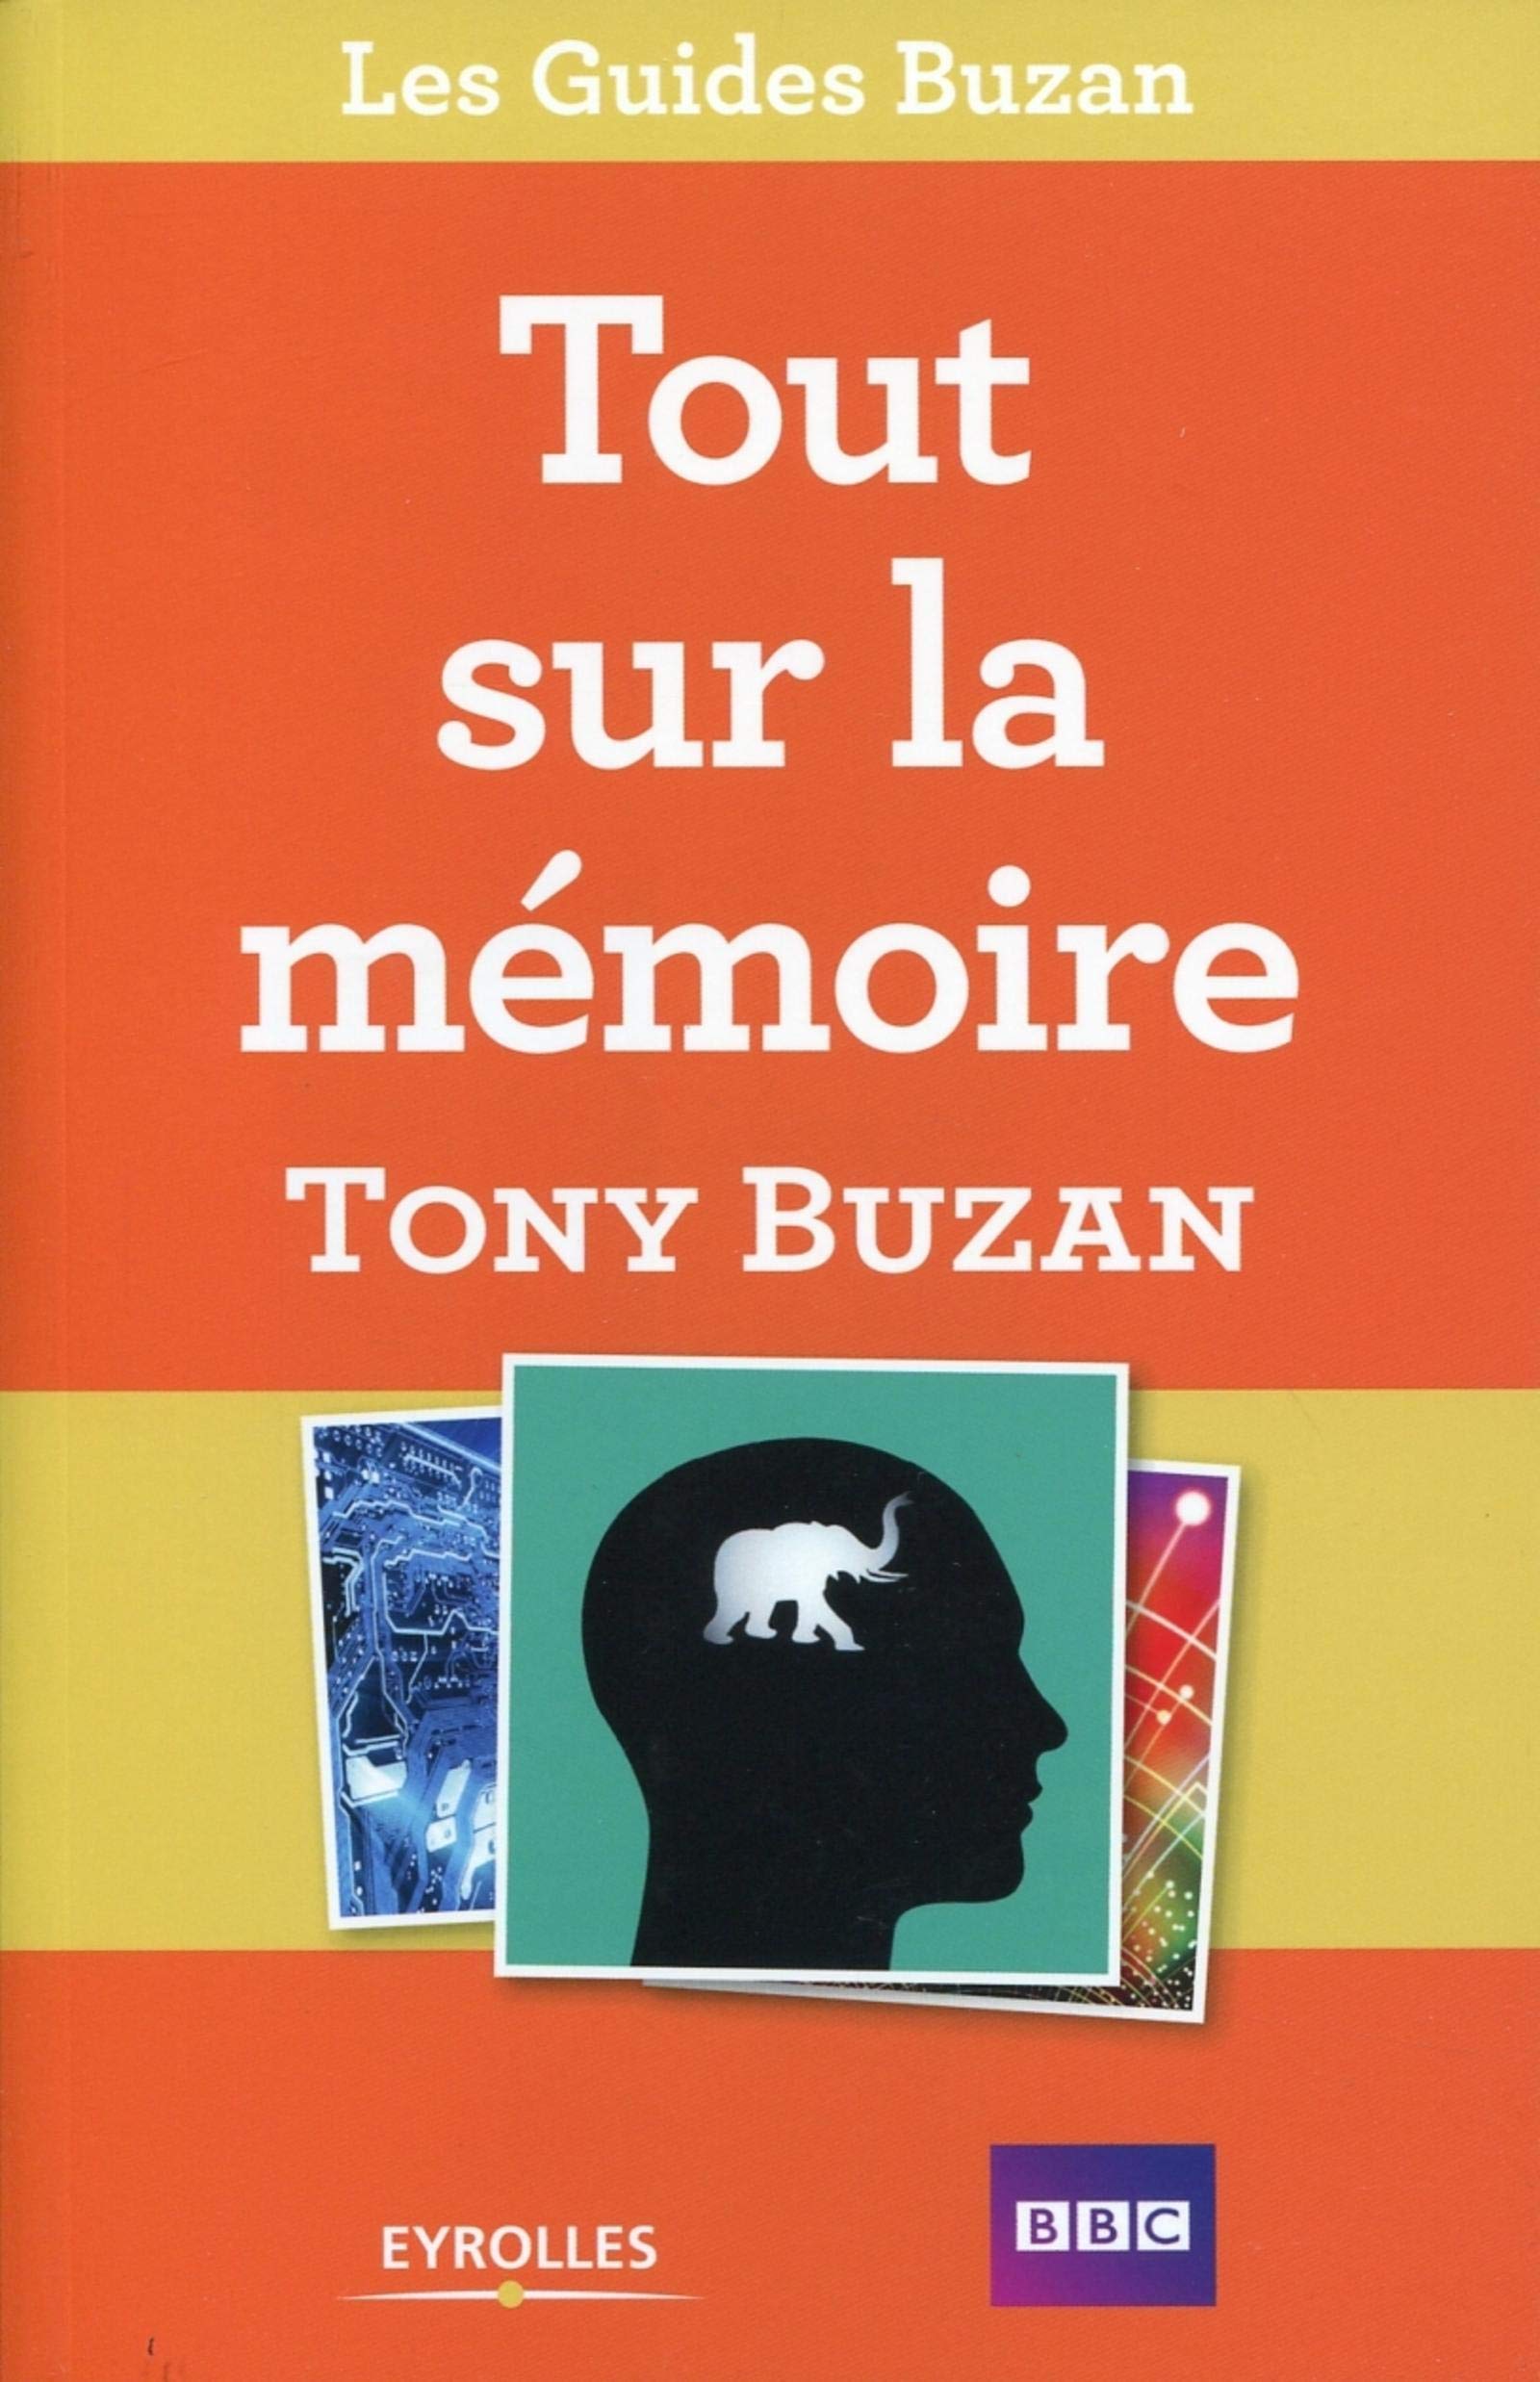 Livre, tout sur la mémoire, Tony Buzan, mémorisation, apprendre, palais mental, savoir, bbc, eyrolles